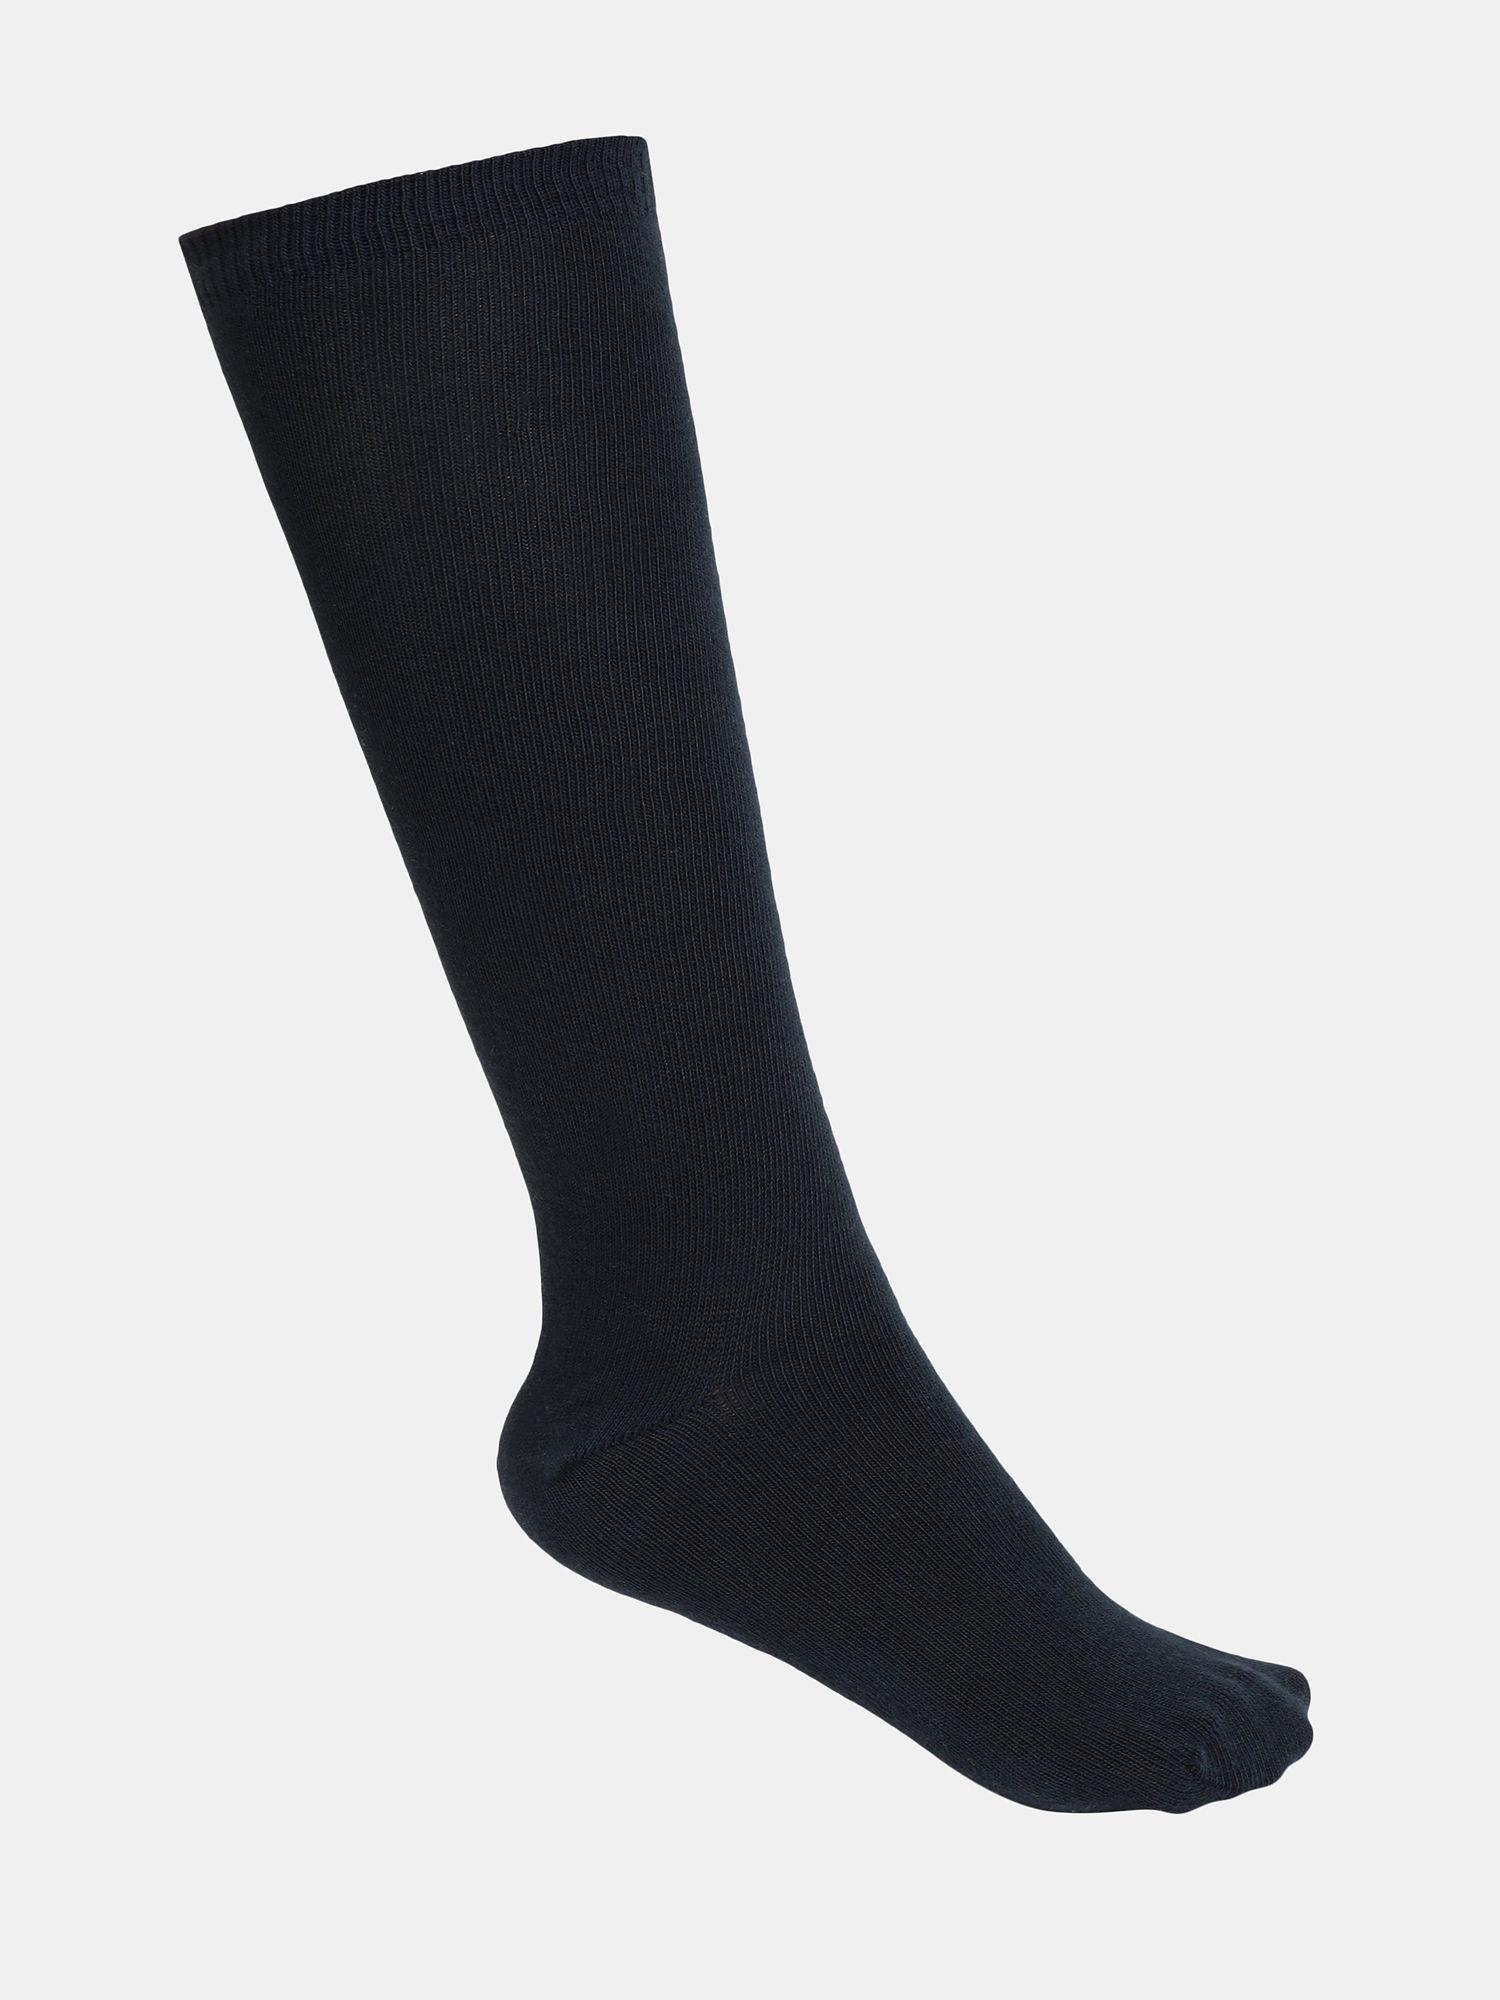 7902 Unisex Cotton Nylon Stretch Knee Length Socks - Navy